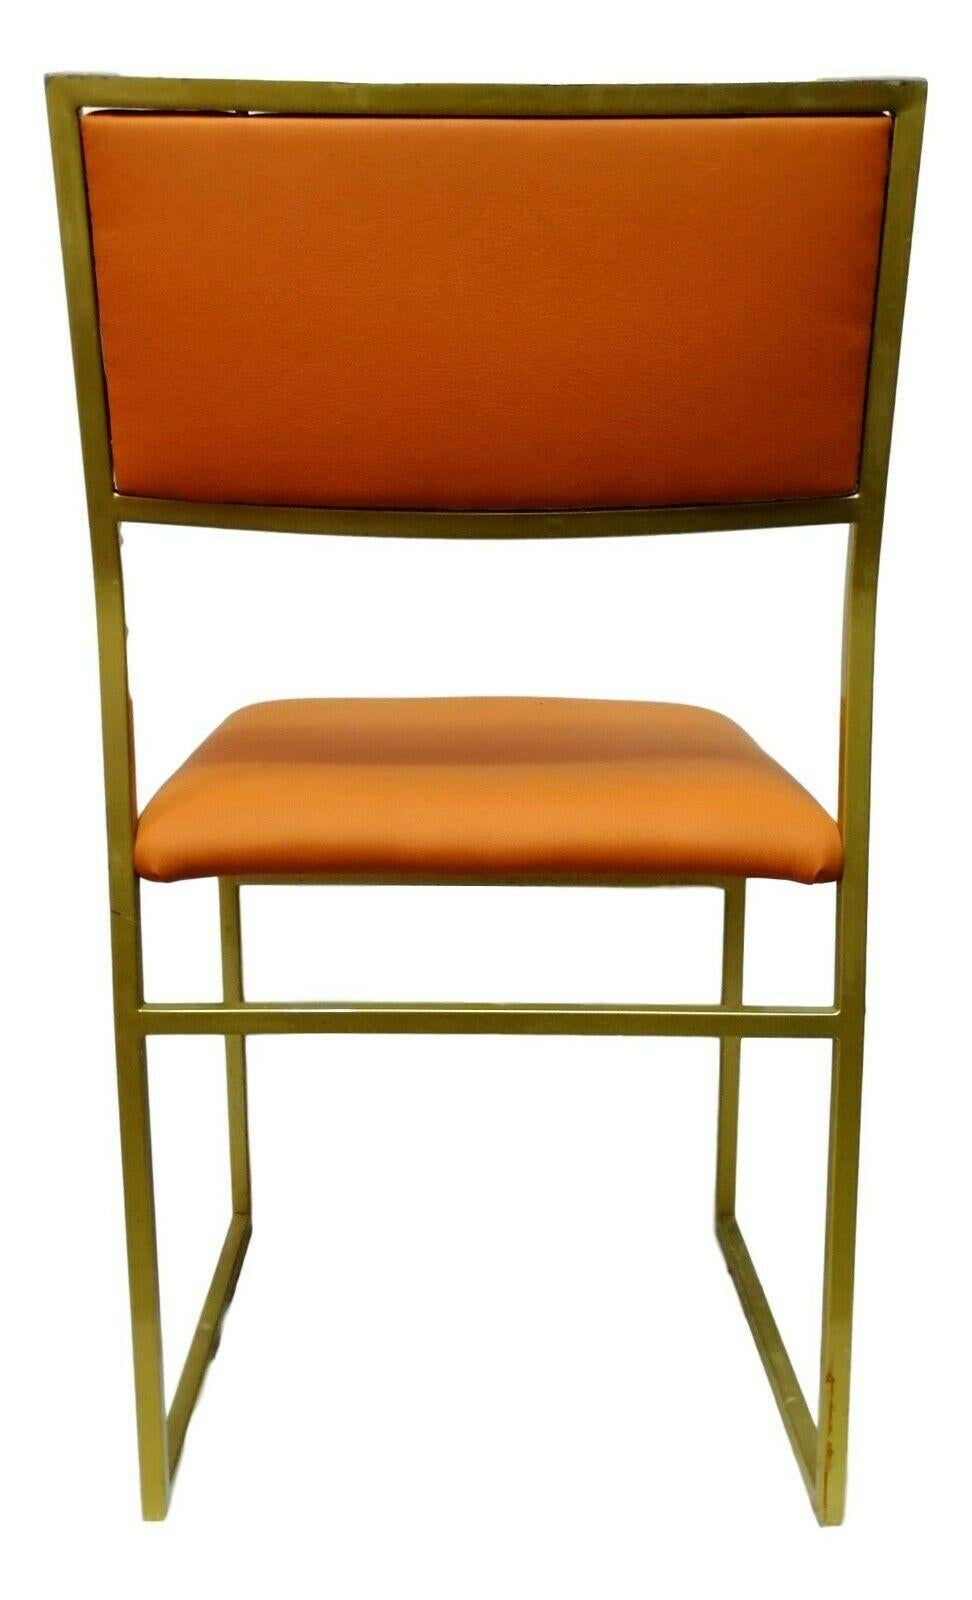 Chaise design originale des années 70, composée d'une structure en métal laqué doré, d'une assise et d'un dossier recouverts de skay ou de chintz rose poudré

Mesure 78 cm de hauteur, 42 cm de largeur, 50 cm de profondeur et 45 cm de hauteur du